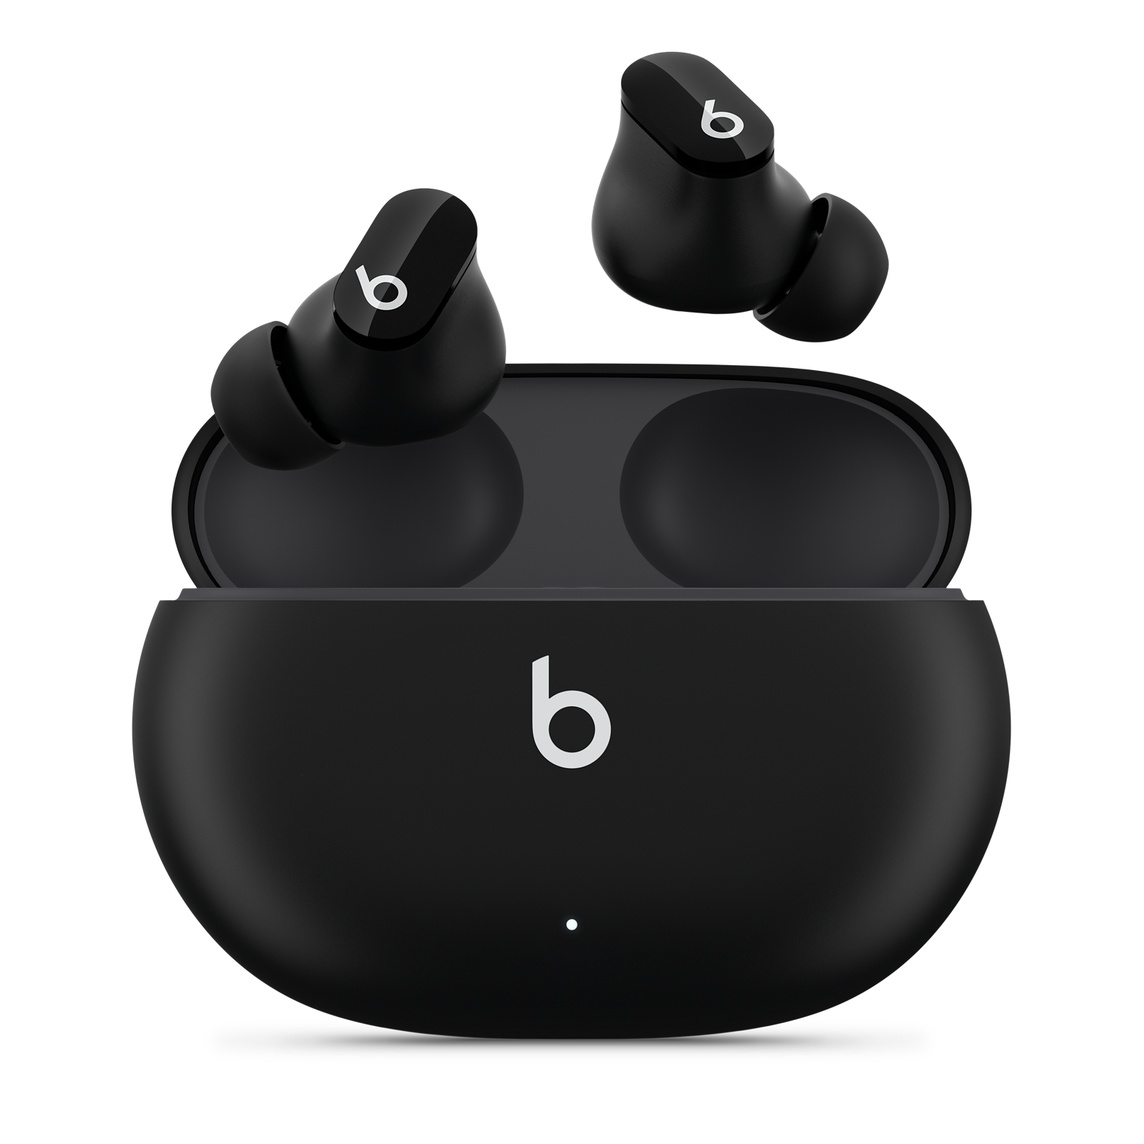 De echt draadloze Beats Studio Buds-oortjes met ruisonderdrukking in zwart met Beats-logo, boven de handige oplaadcase.